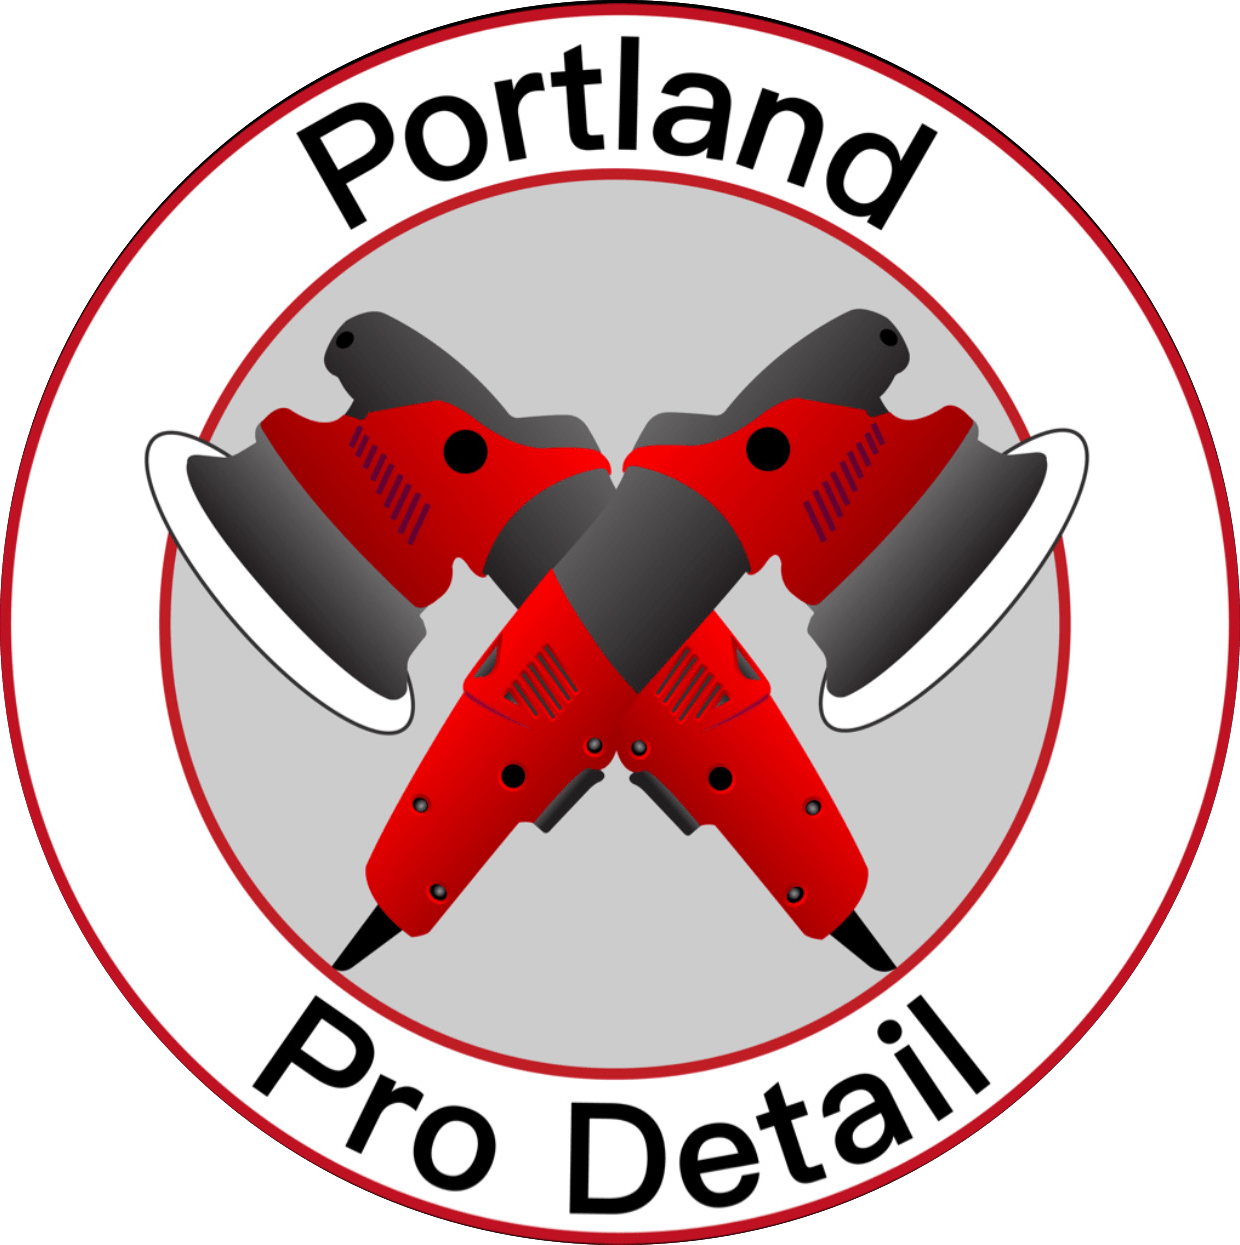 Portland Pro Detail